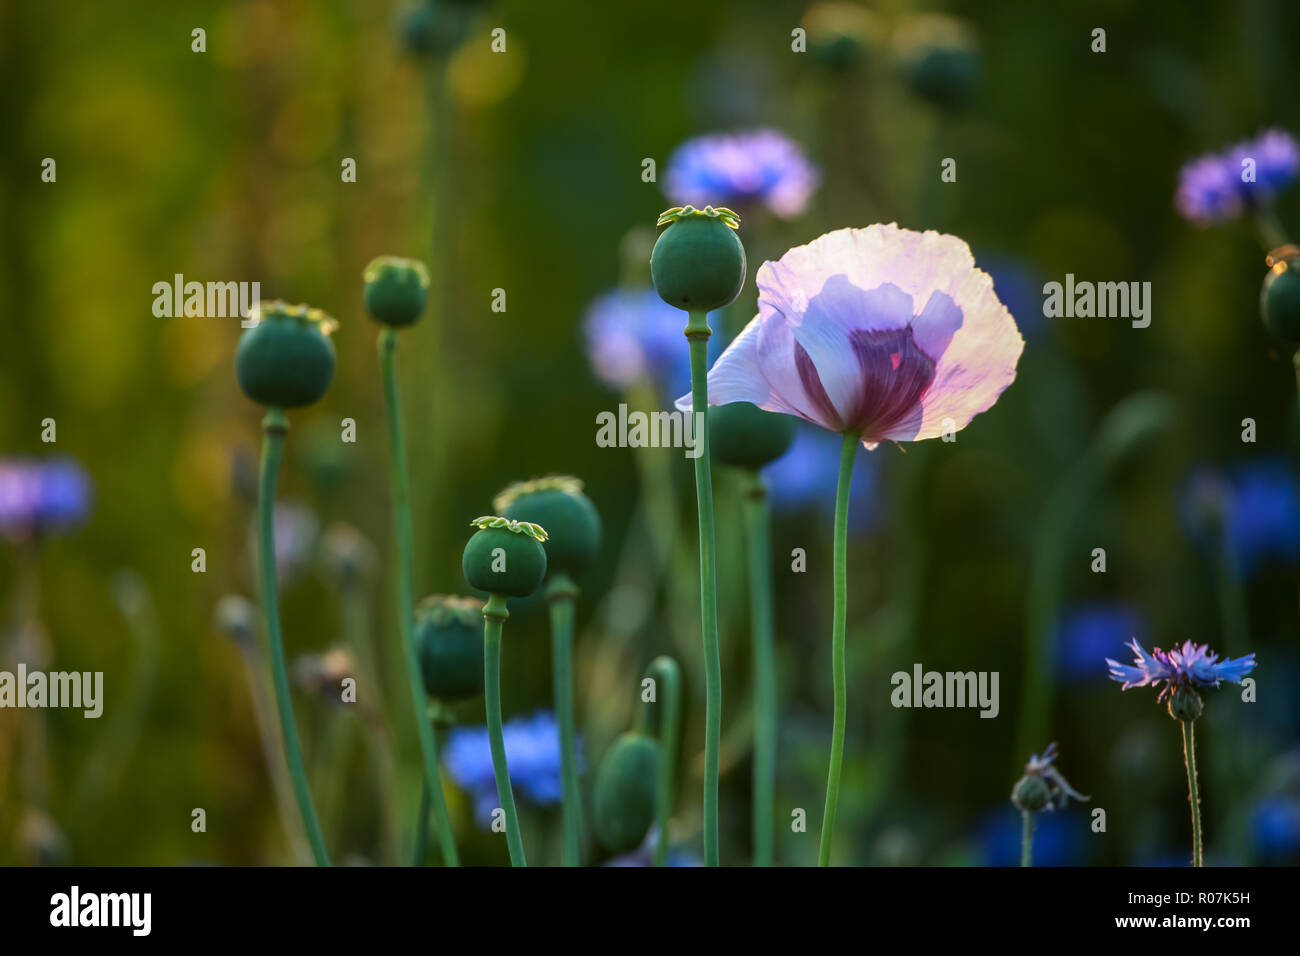 Ansicht von einem violetten Mohnblume und Mohn Kästen auf der grünen Wiese. Poppy ist krautige Pflanze mit auffälligen Blüten, Milchsaft und Runden Stockfoto